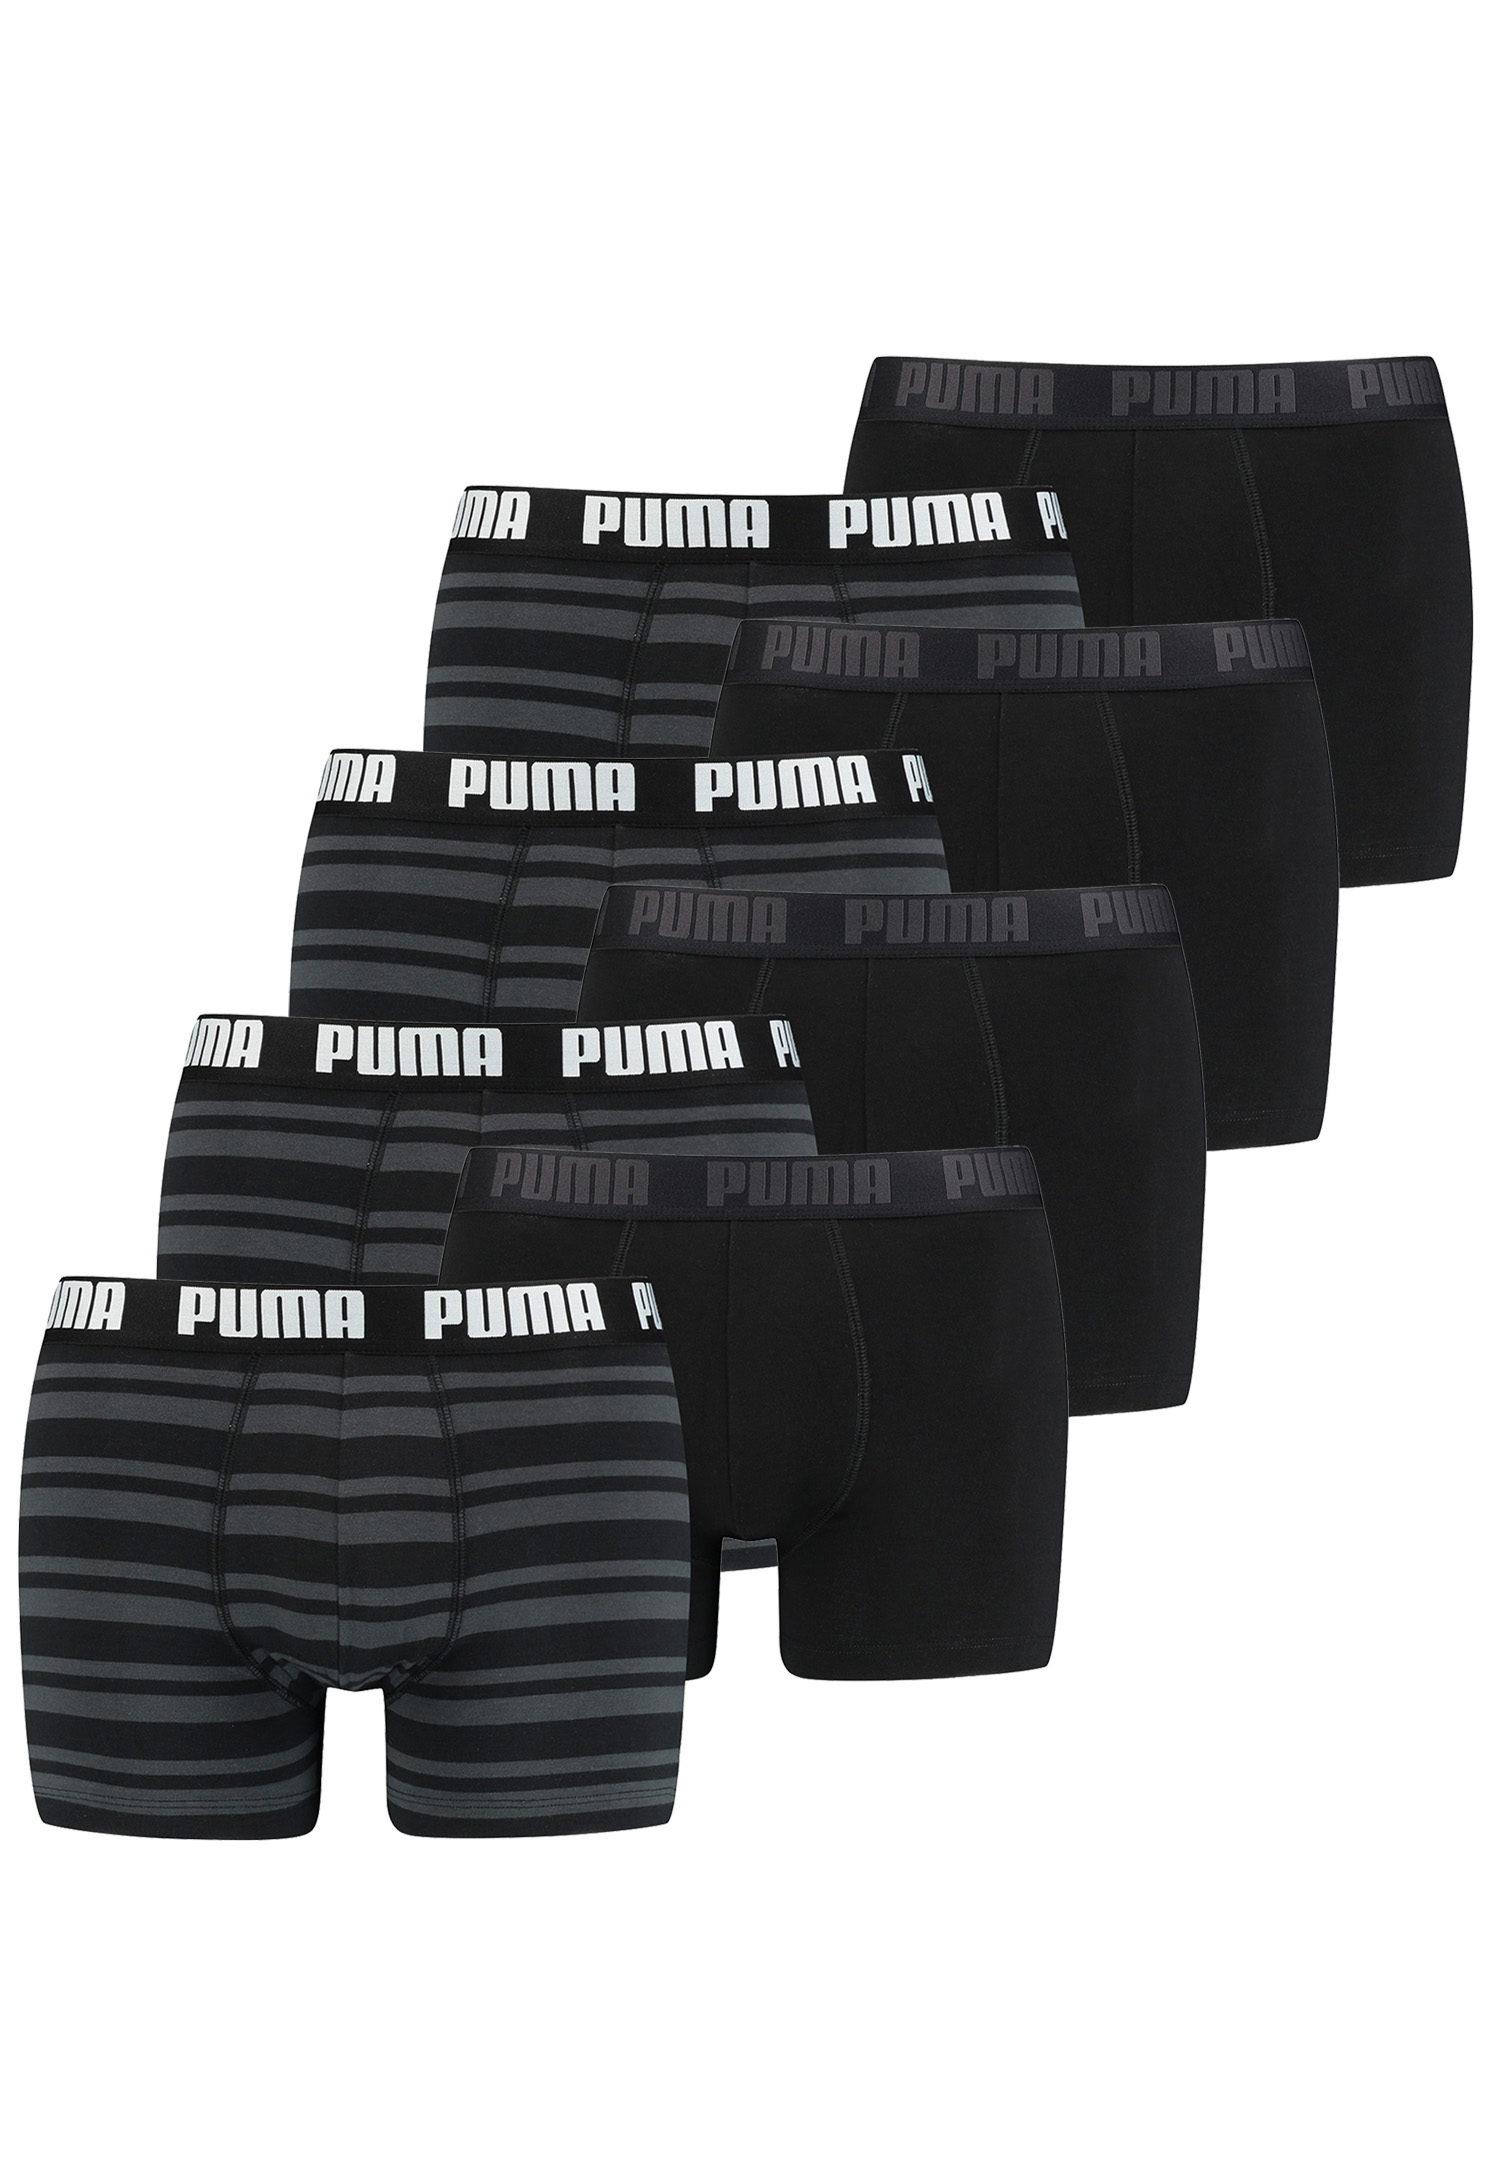 8 er Pack Puma Boxer Boxershorts Men Herren Unterhose Pant Unterwäsche